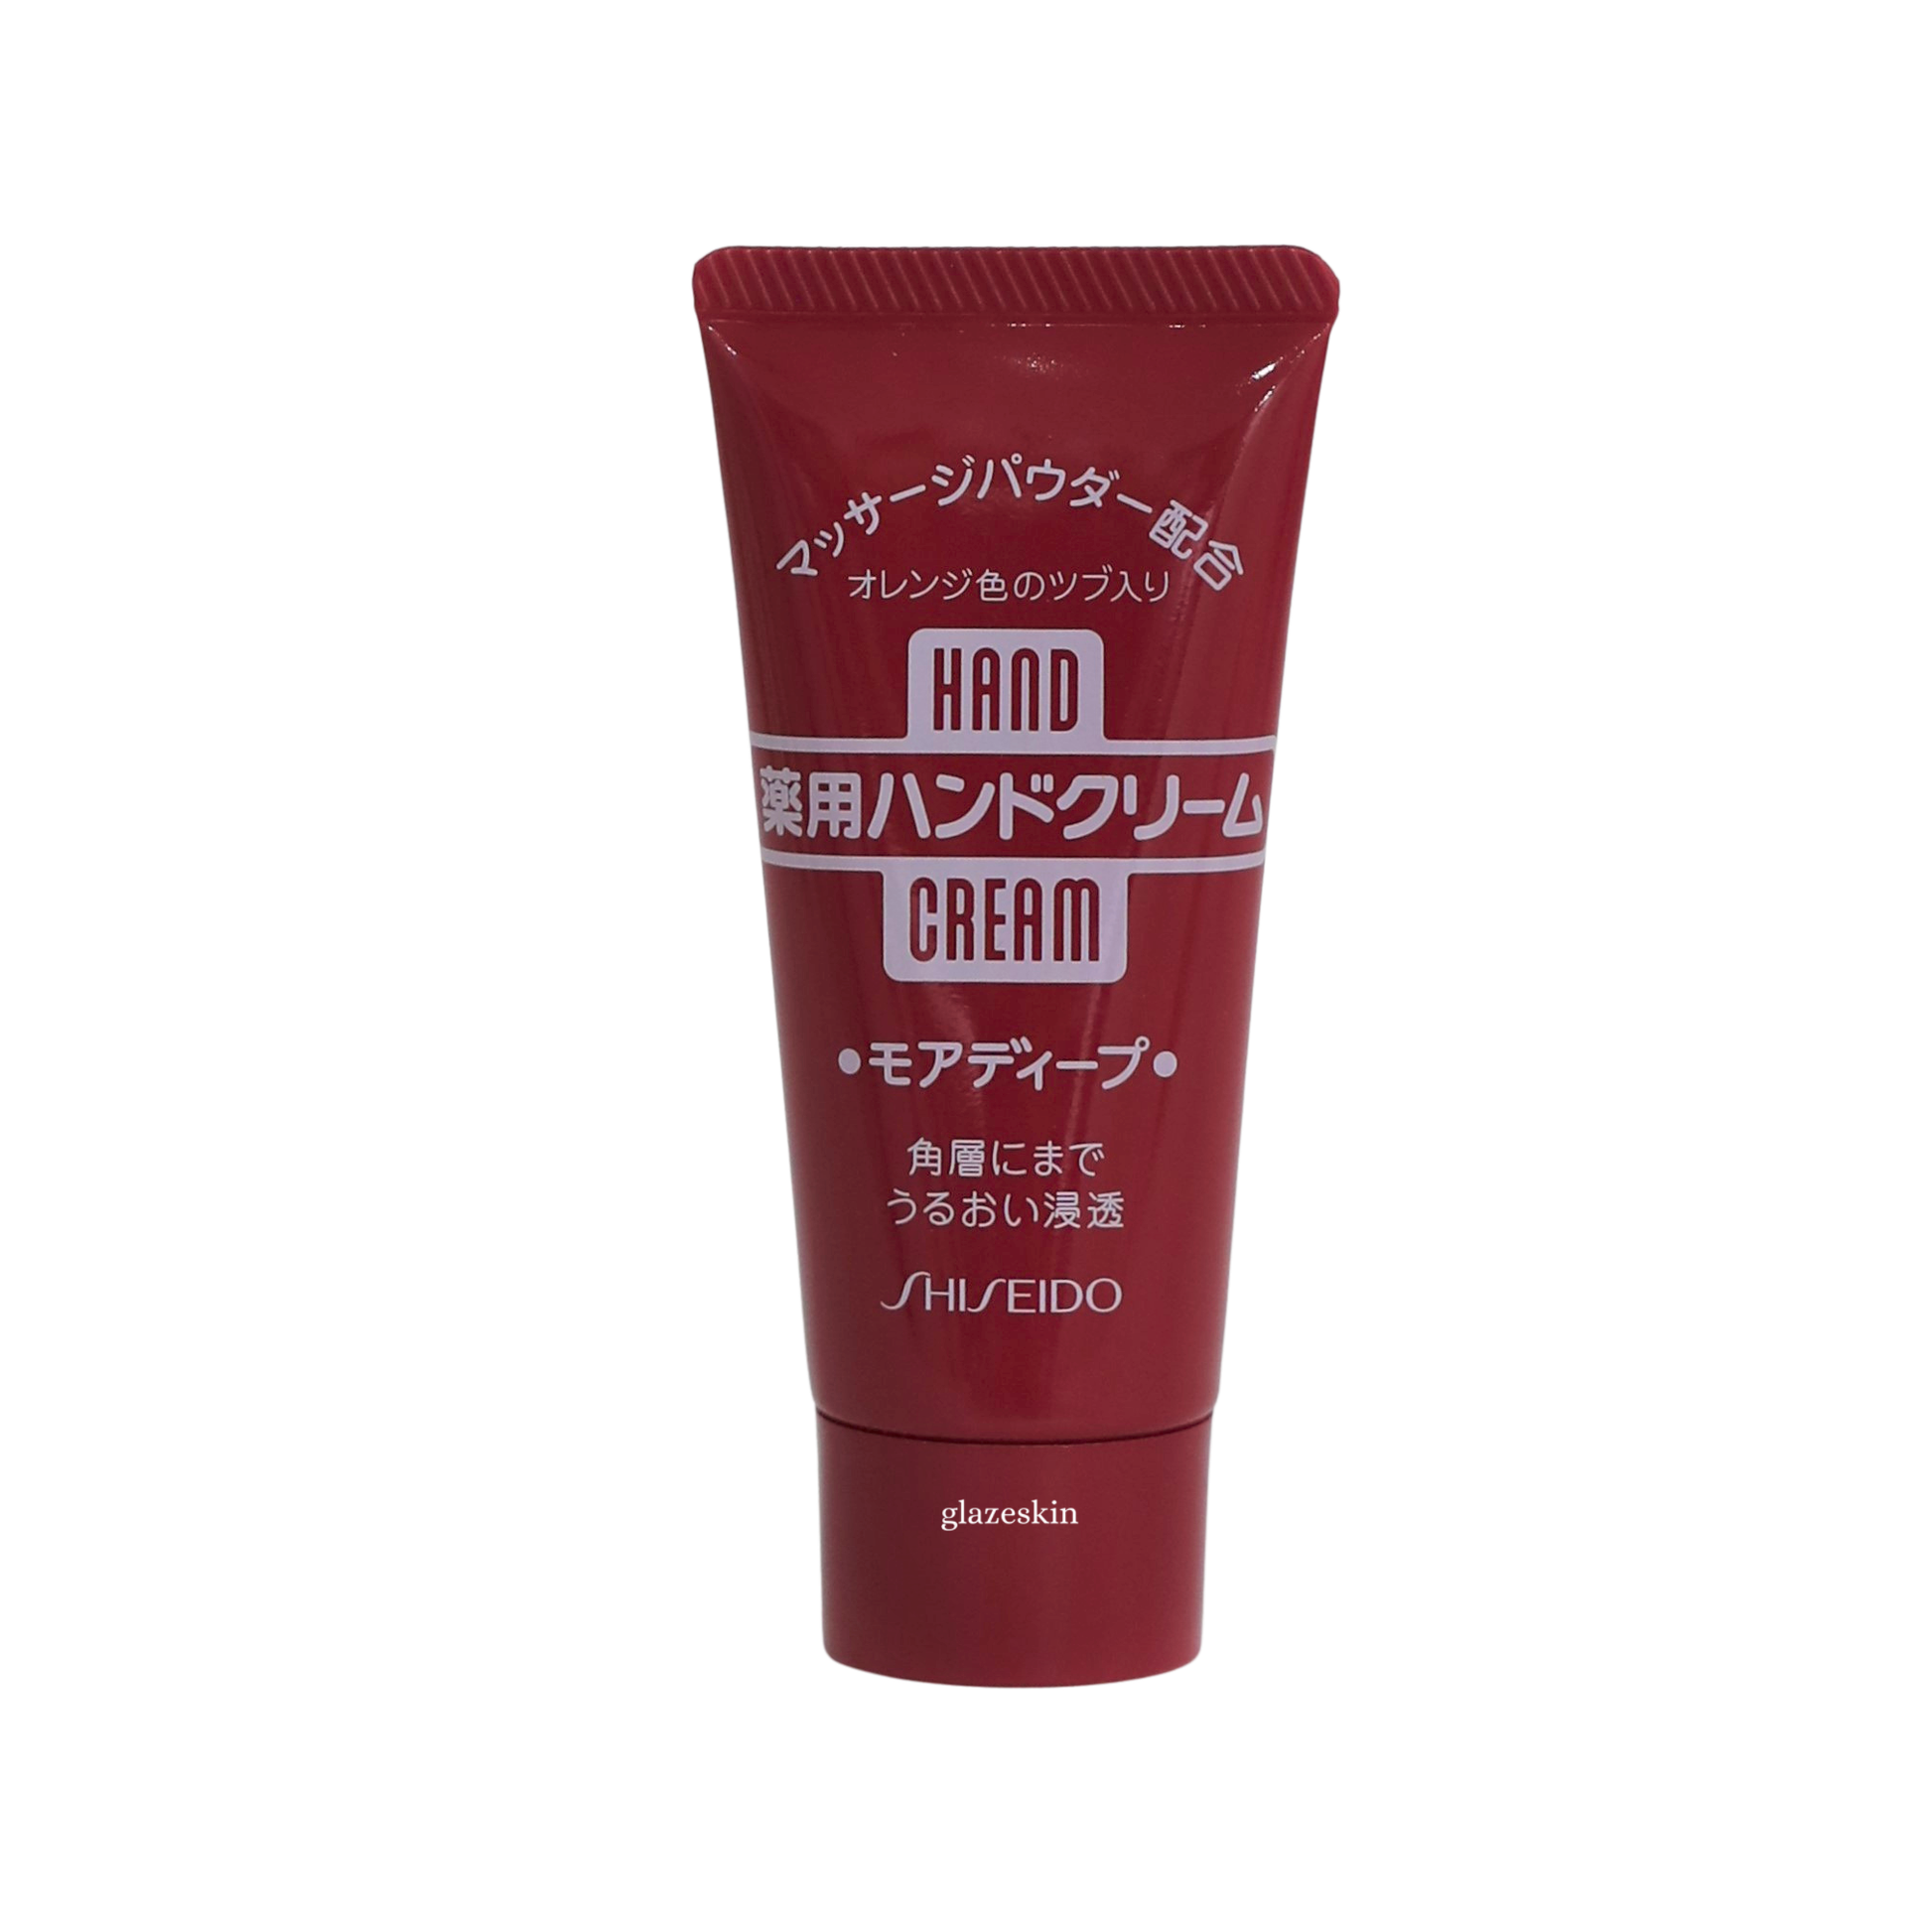 Shiseido - Hand Cream - 30g - glazeskin